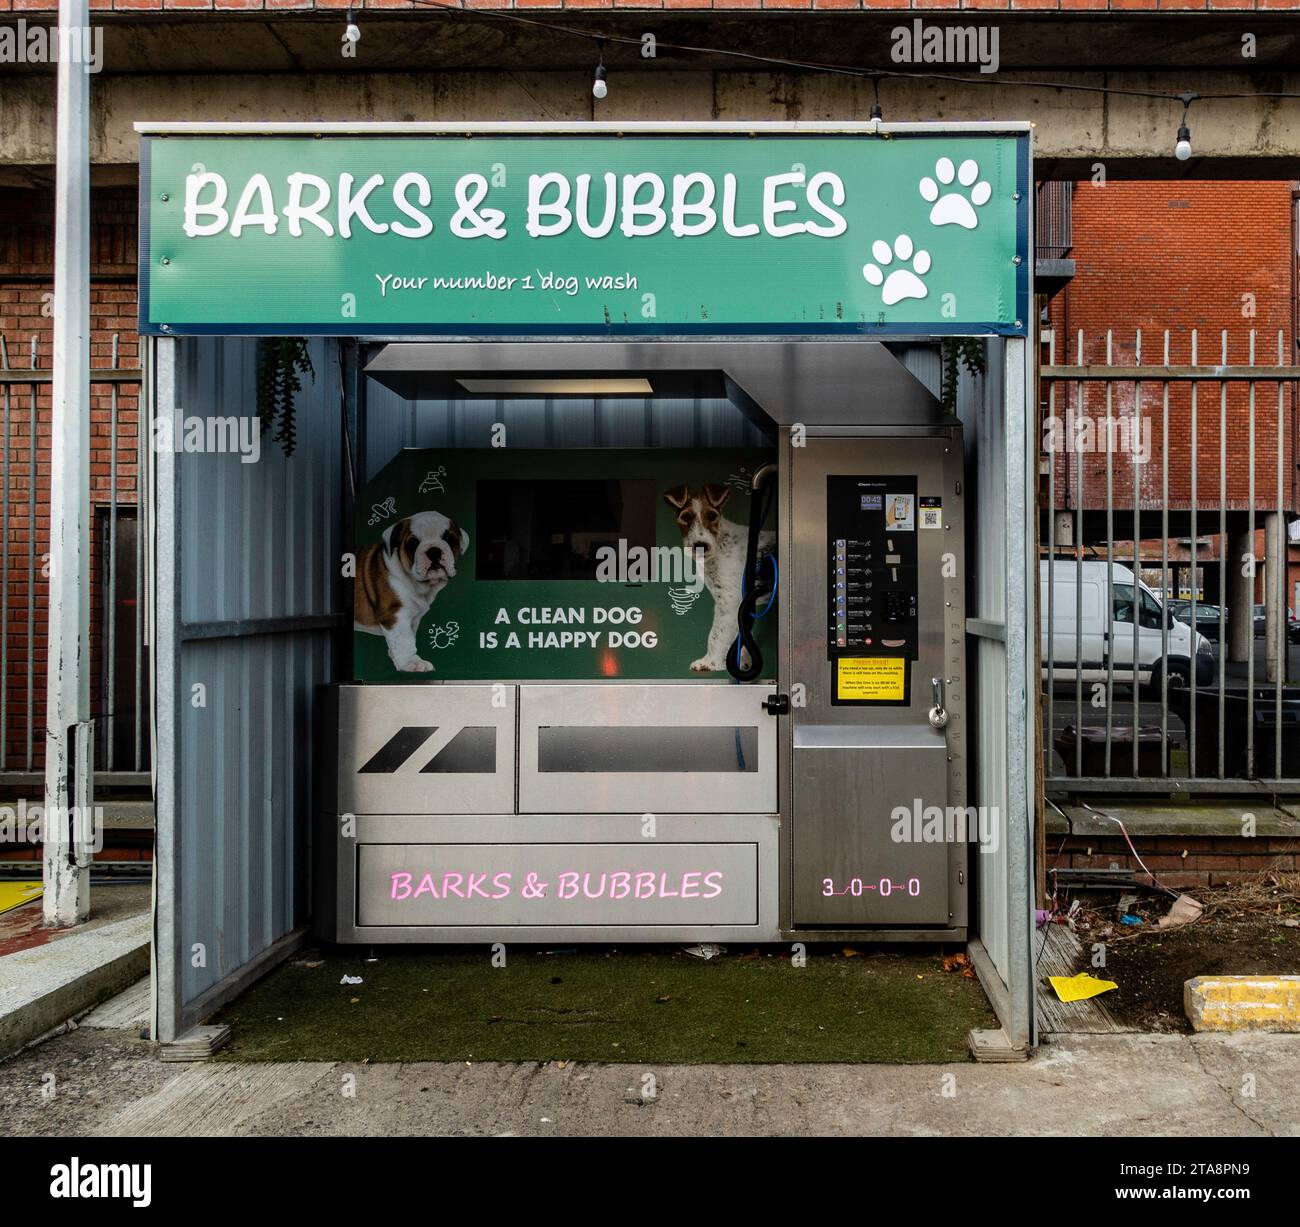 Station de lavage automatique de chiens en libre-service, Barks & Bubbles, offrant une solution de nettoyage pratique pour les animaux domestiques en milieu urbain. » Banque D'Images